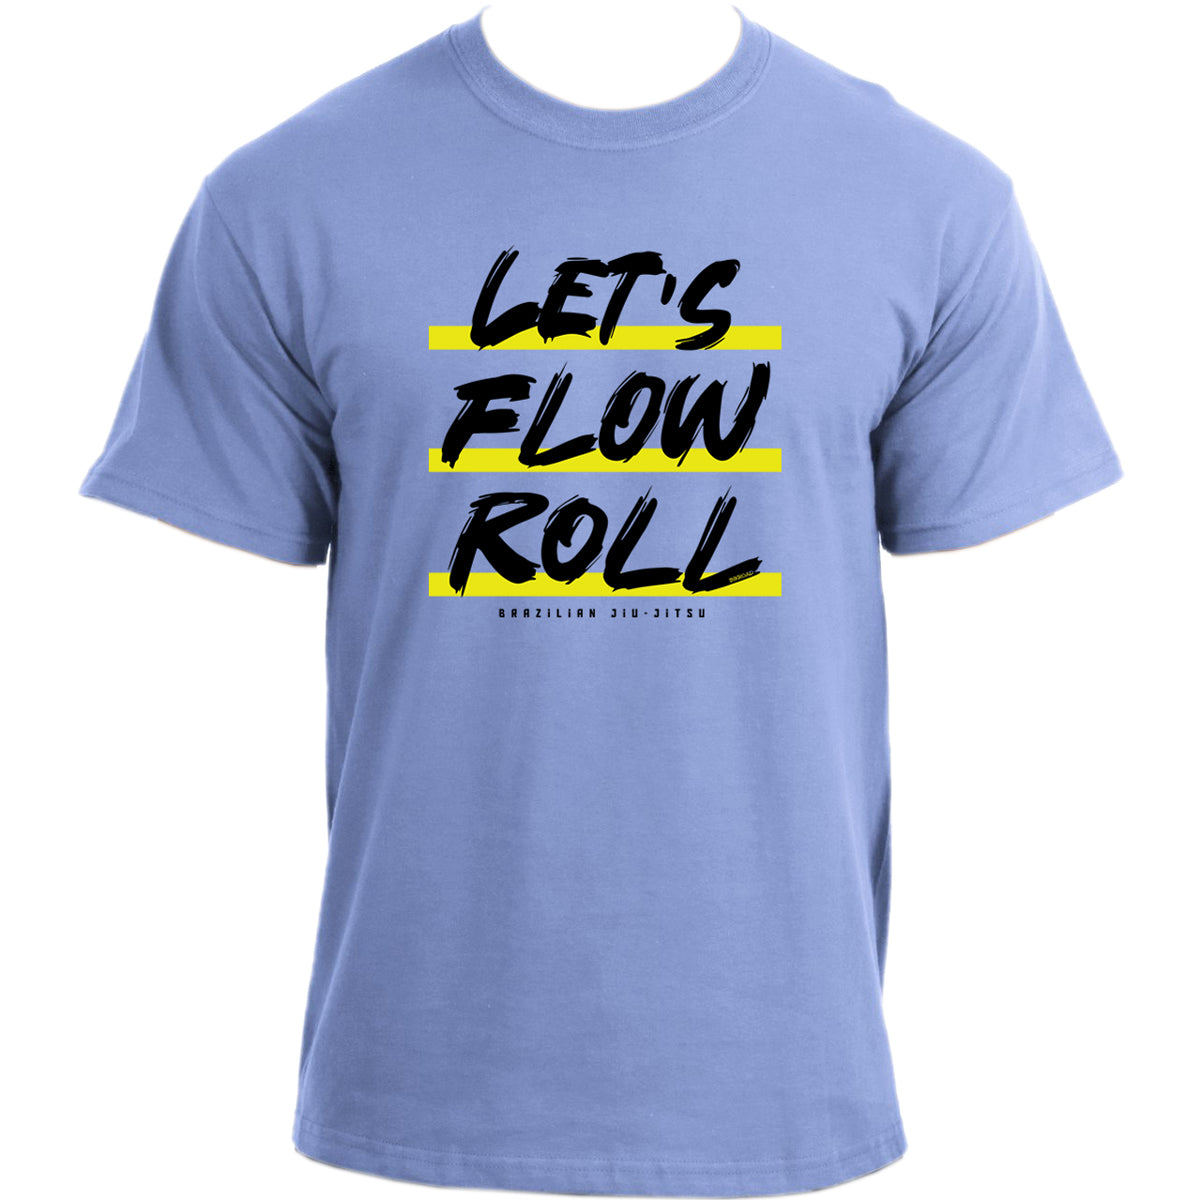 Let's Flow Roll Jiu Jitsu T-Shirt for Martial Arts, Jiu-Jitsu, MMA, and BJJ Sports Fans